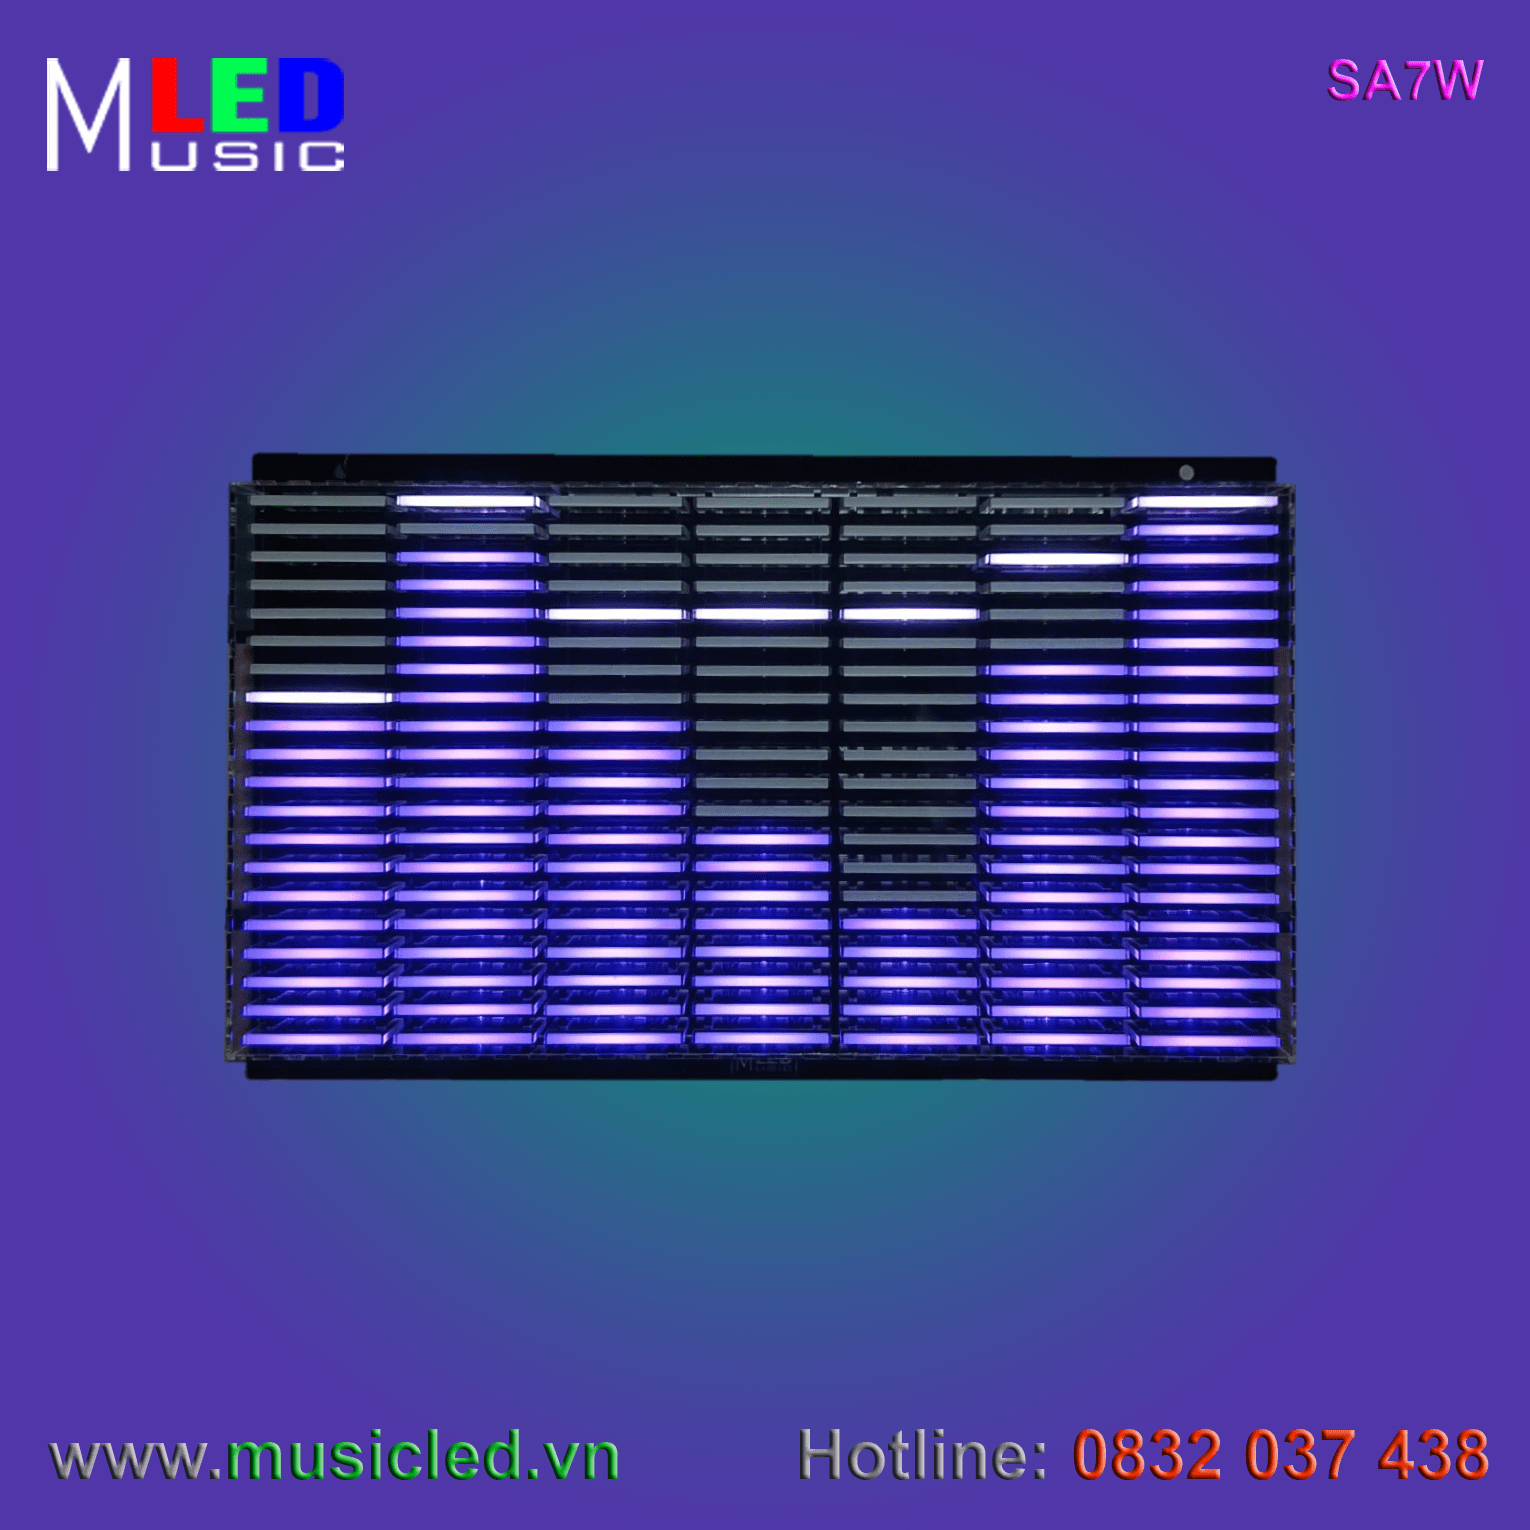 Dàn đèn Music LED nháy theo tần số nhạc 7 cột treo tường (SA7W)